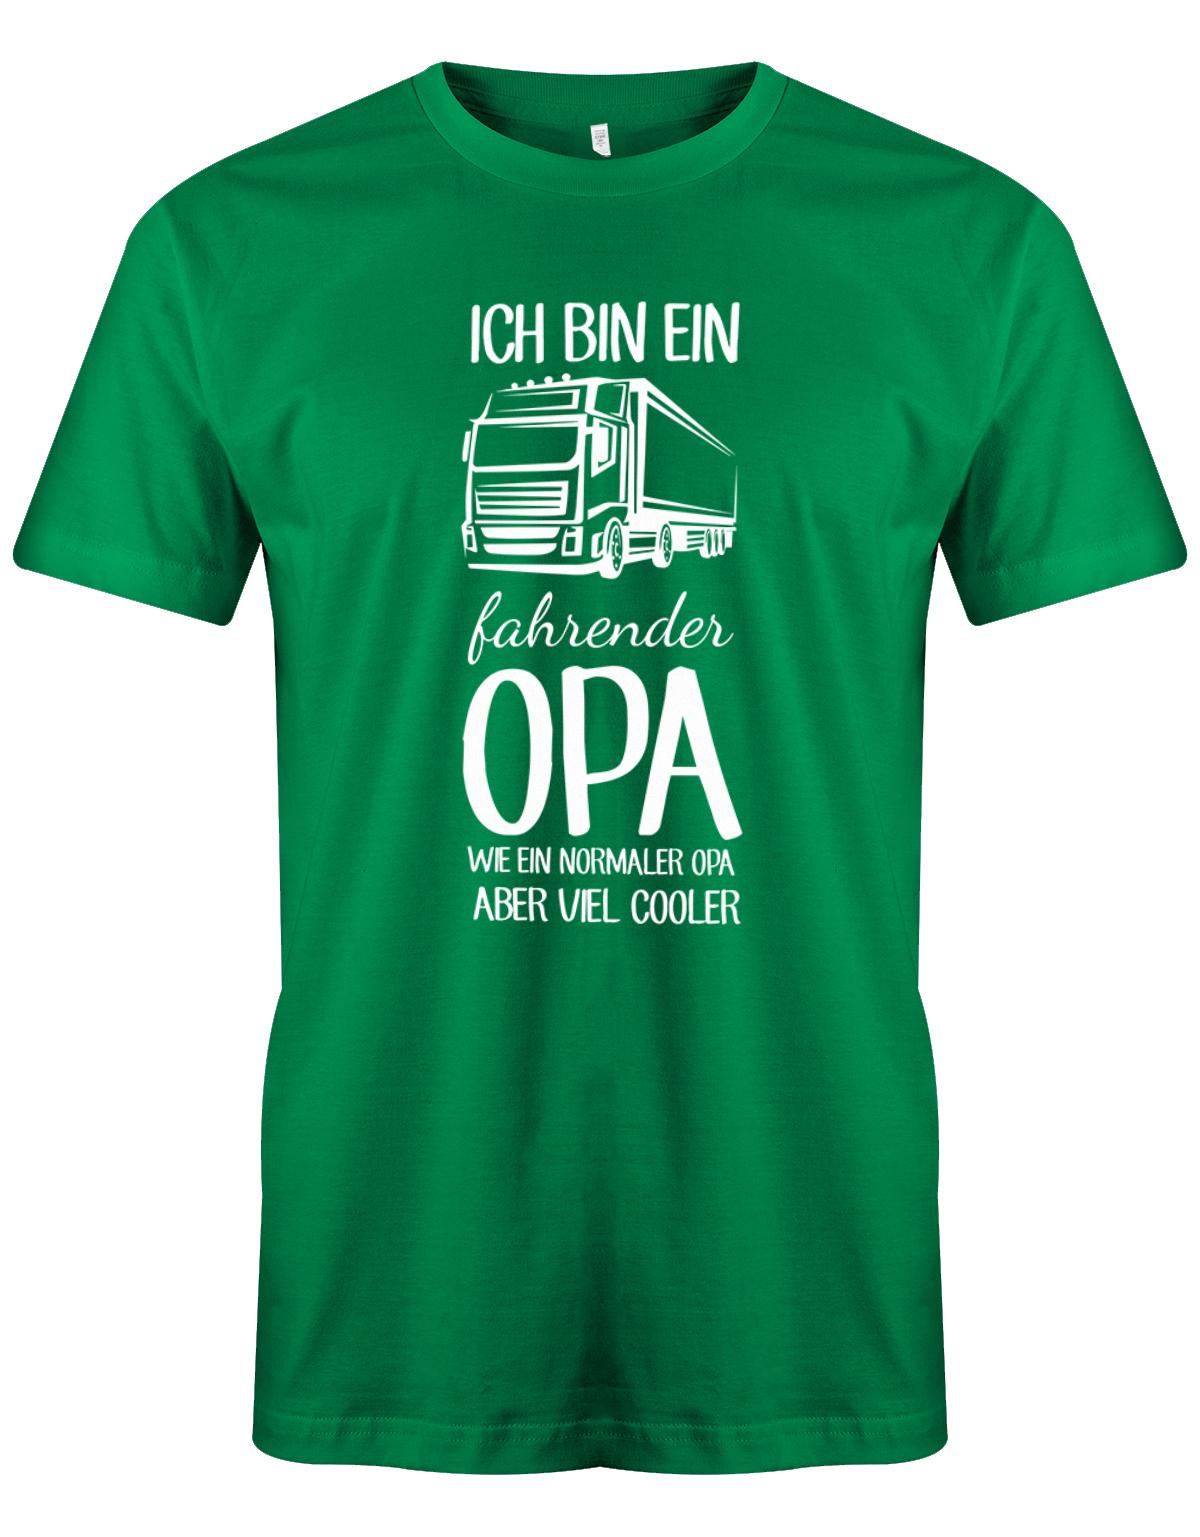 Ich bin ein LKW fahrender Opa wie ein normaler Opa aber viel cooler - Kraftfahrer - Herren T-Shirt Grün